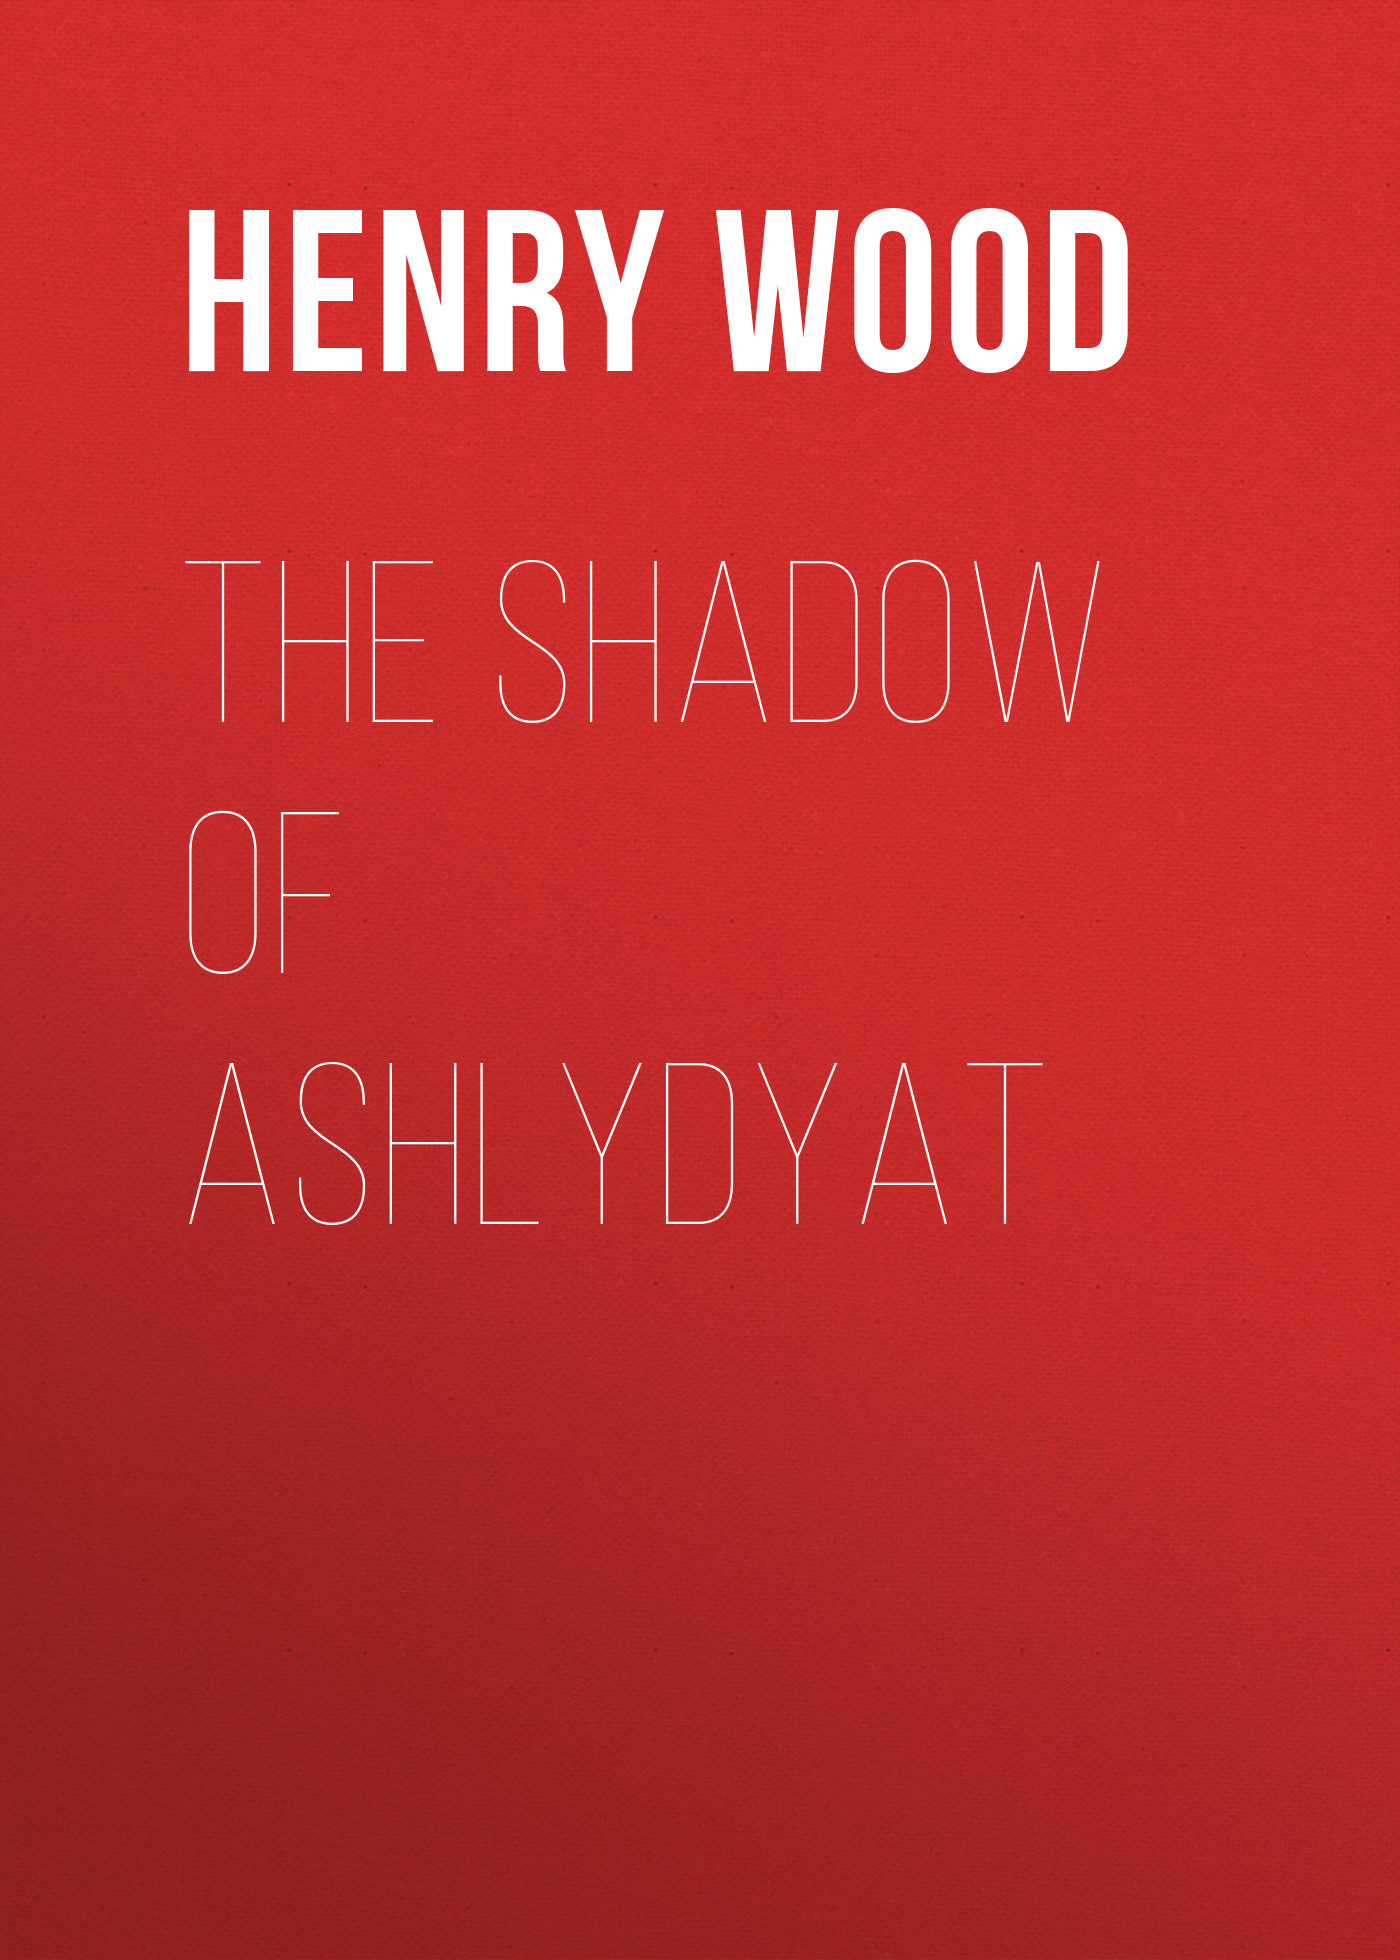 Книга The Shadow of Ashlydyat из серии , созданная Henry Wood, может относится к жанру Зарубежная классика, Литература 19 века, Зарубежная старинная литература. Стоимость электронной книги The Shadow of Ashlydyat с идентификатором 35007569 составляет 0 руб.